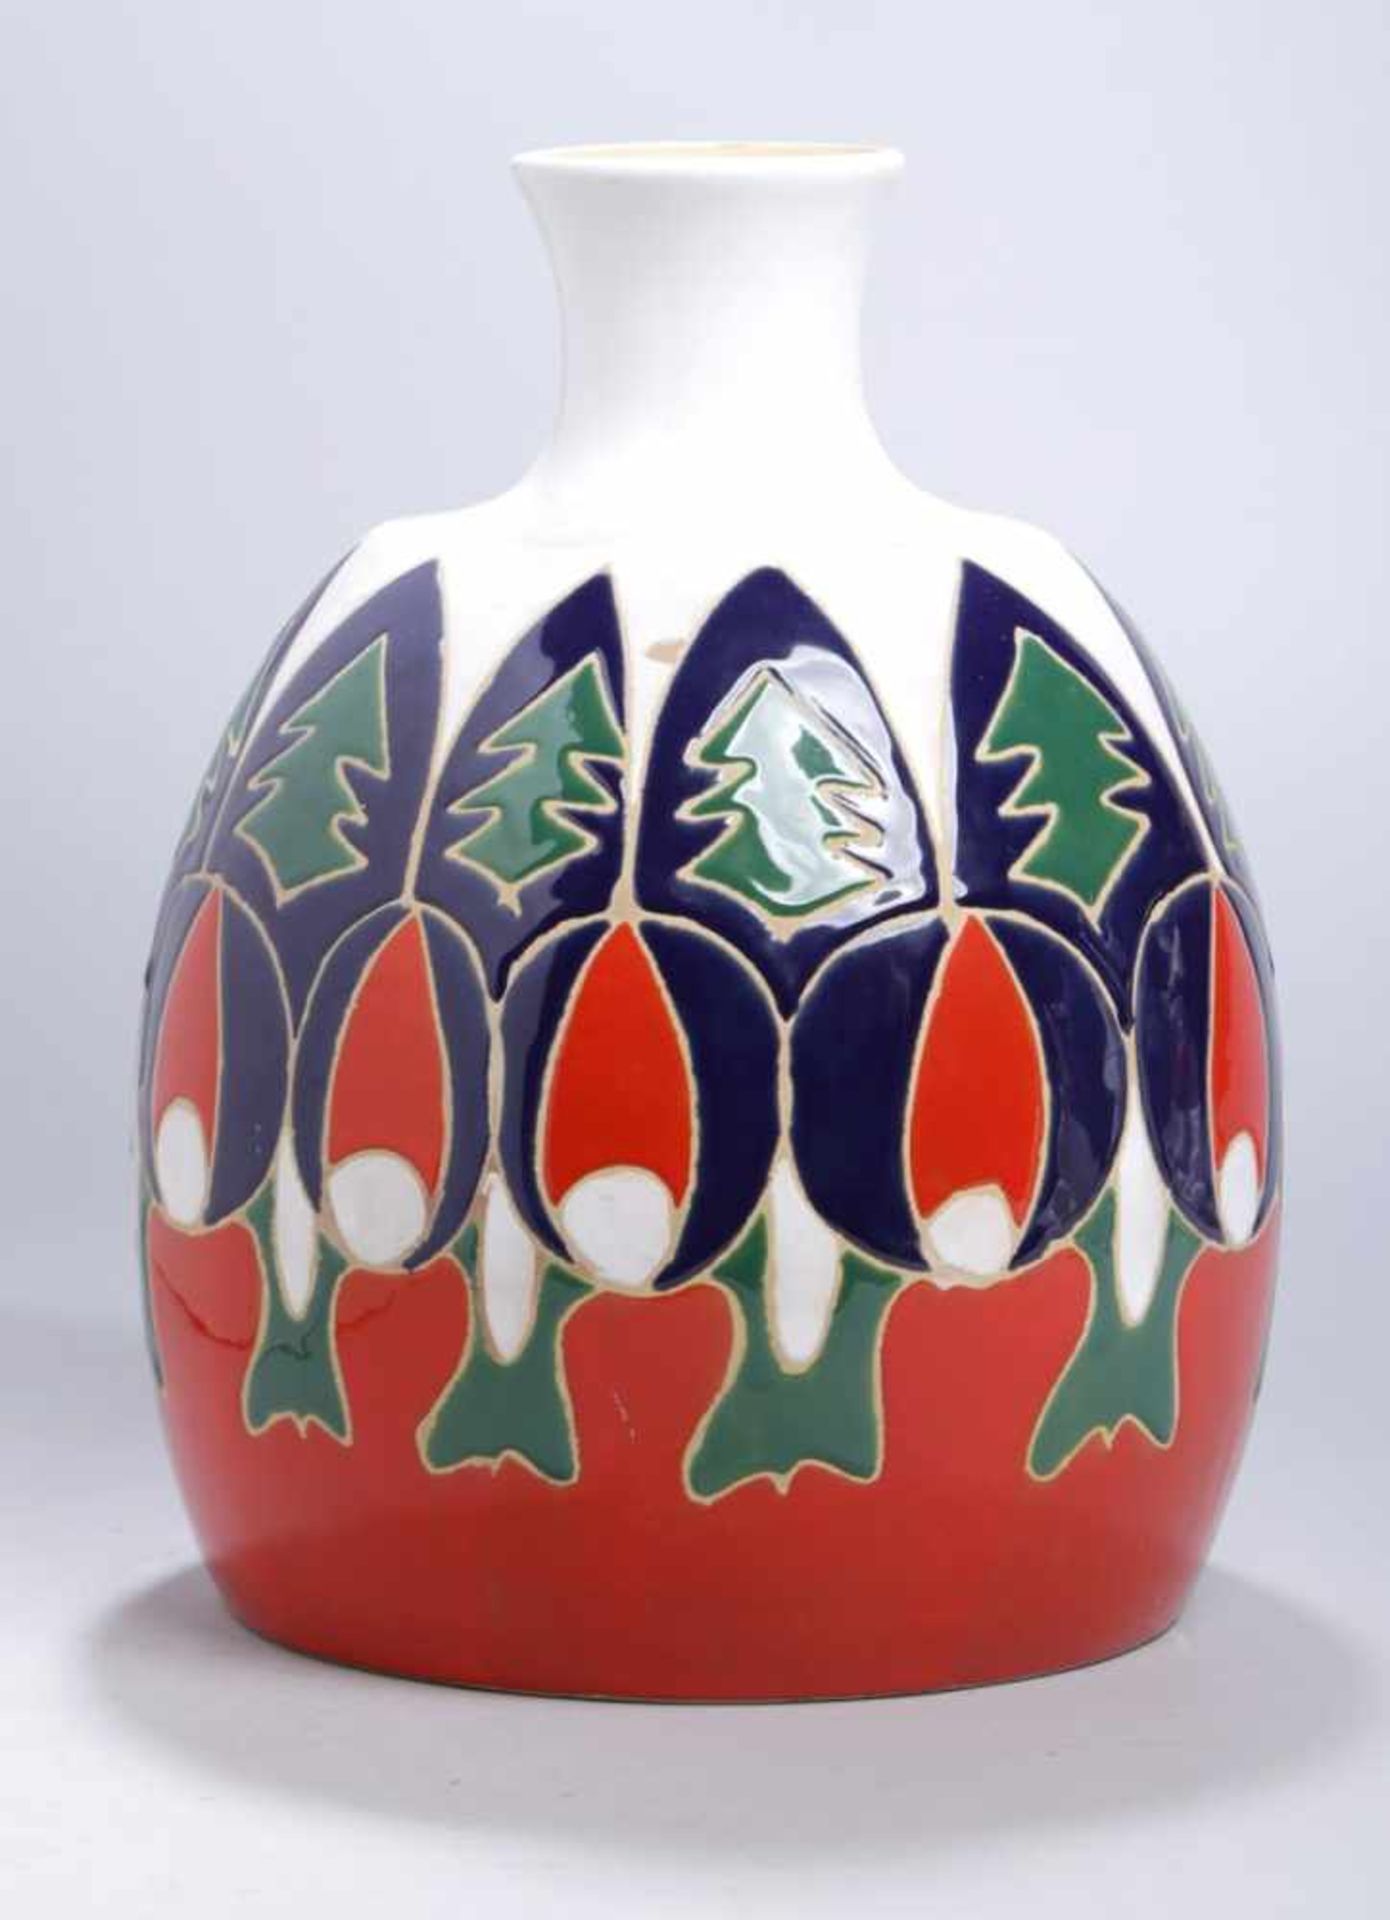 Keramik-Ziervase, Italien, 70er Jahre, runder Stand, bauchiger Korpus, abgesetzter,eingezogener Hals